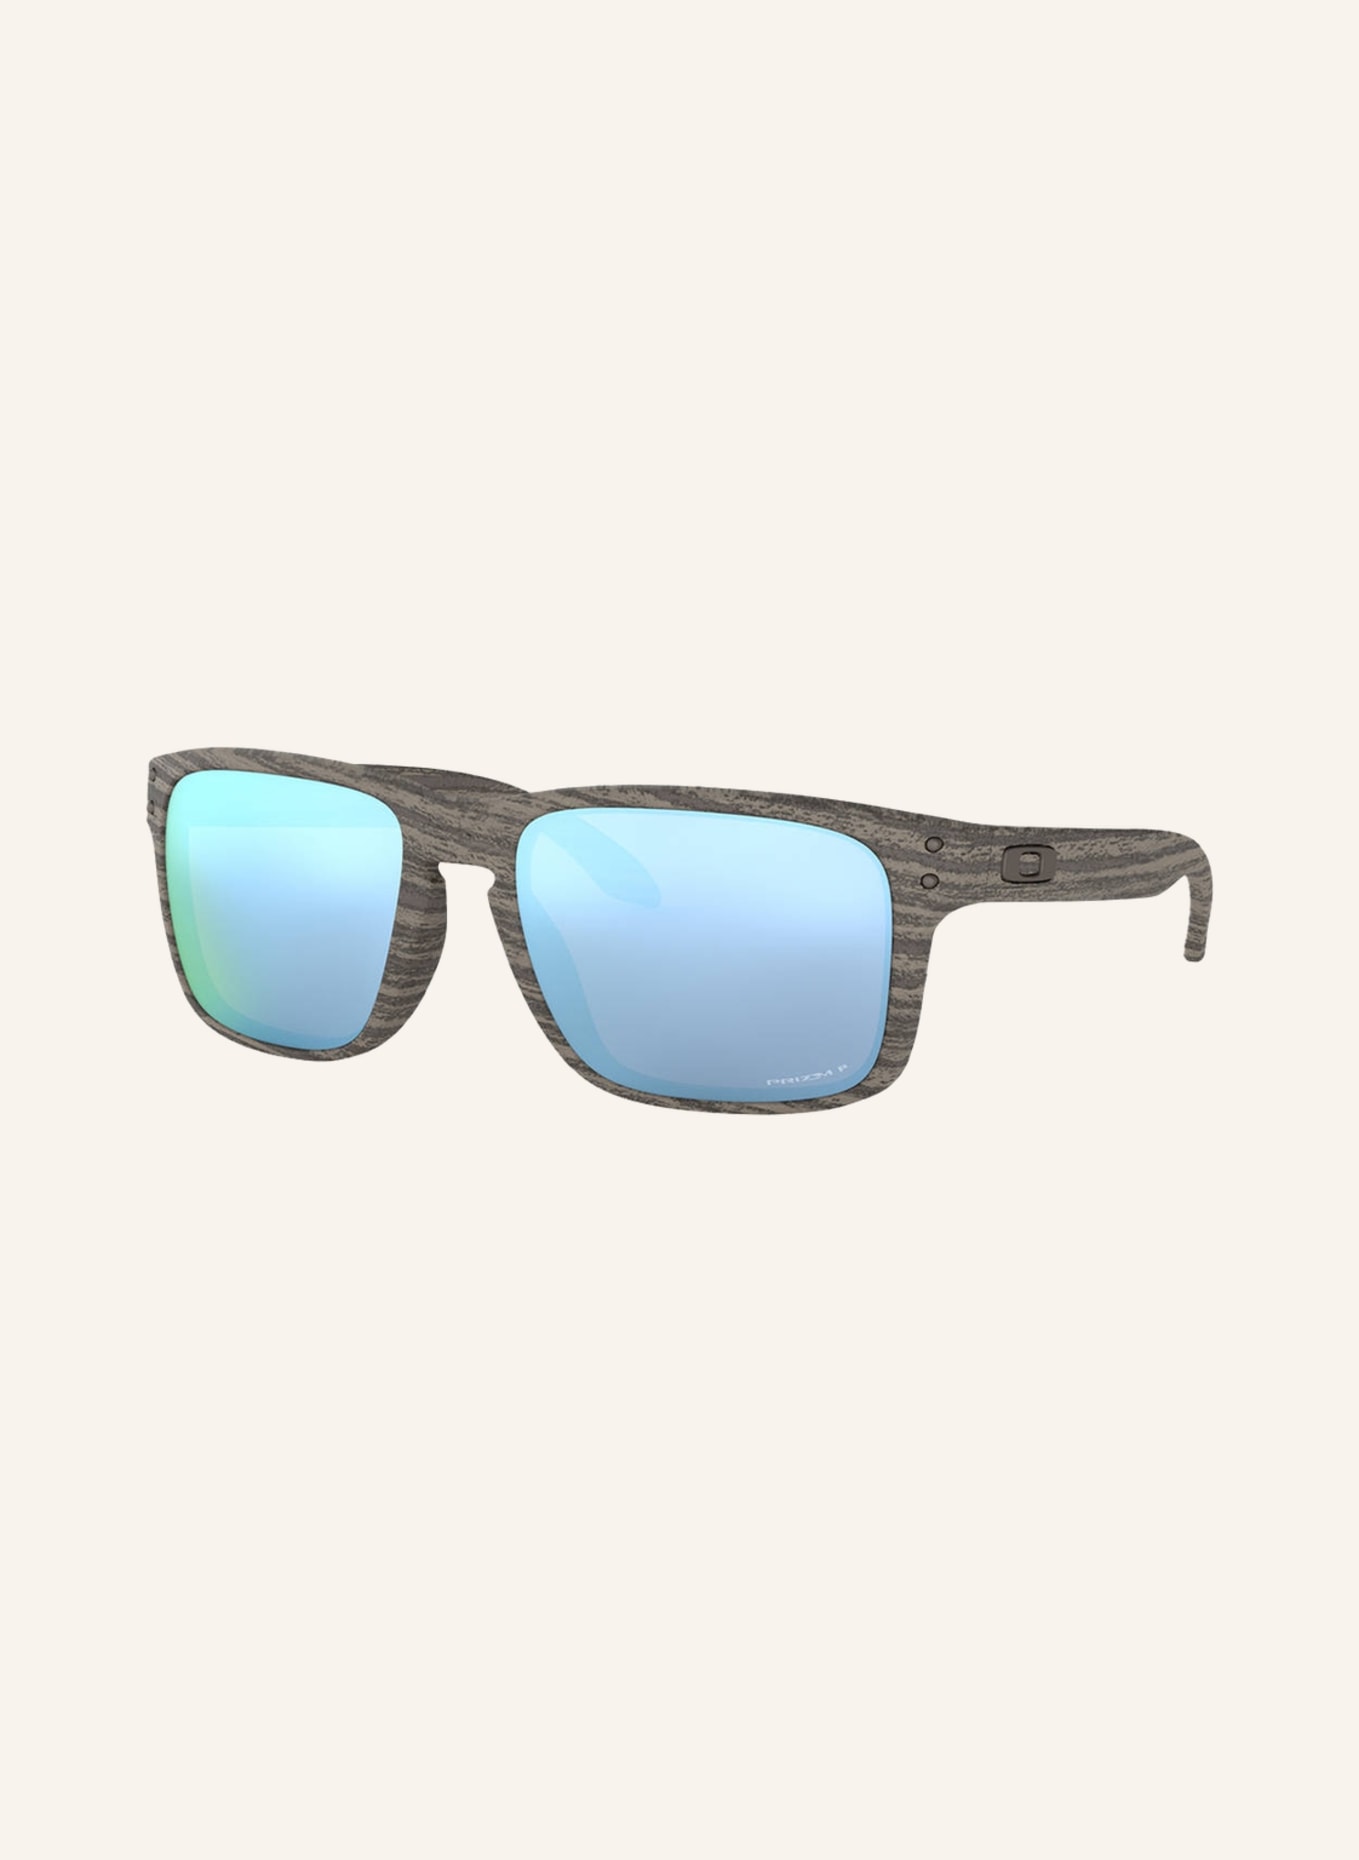 OAKLEY Sonnenbrille HOLBROOK , Farbe: 9102J9 - BEIGE/ BLAU VERSPIEGELT (Bild 1)